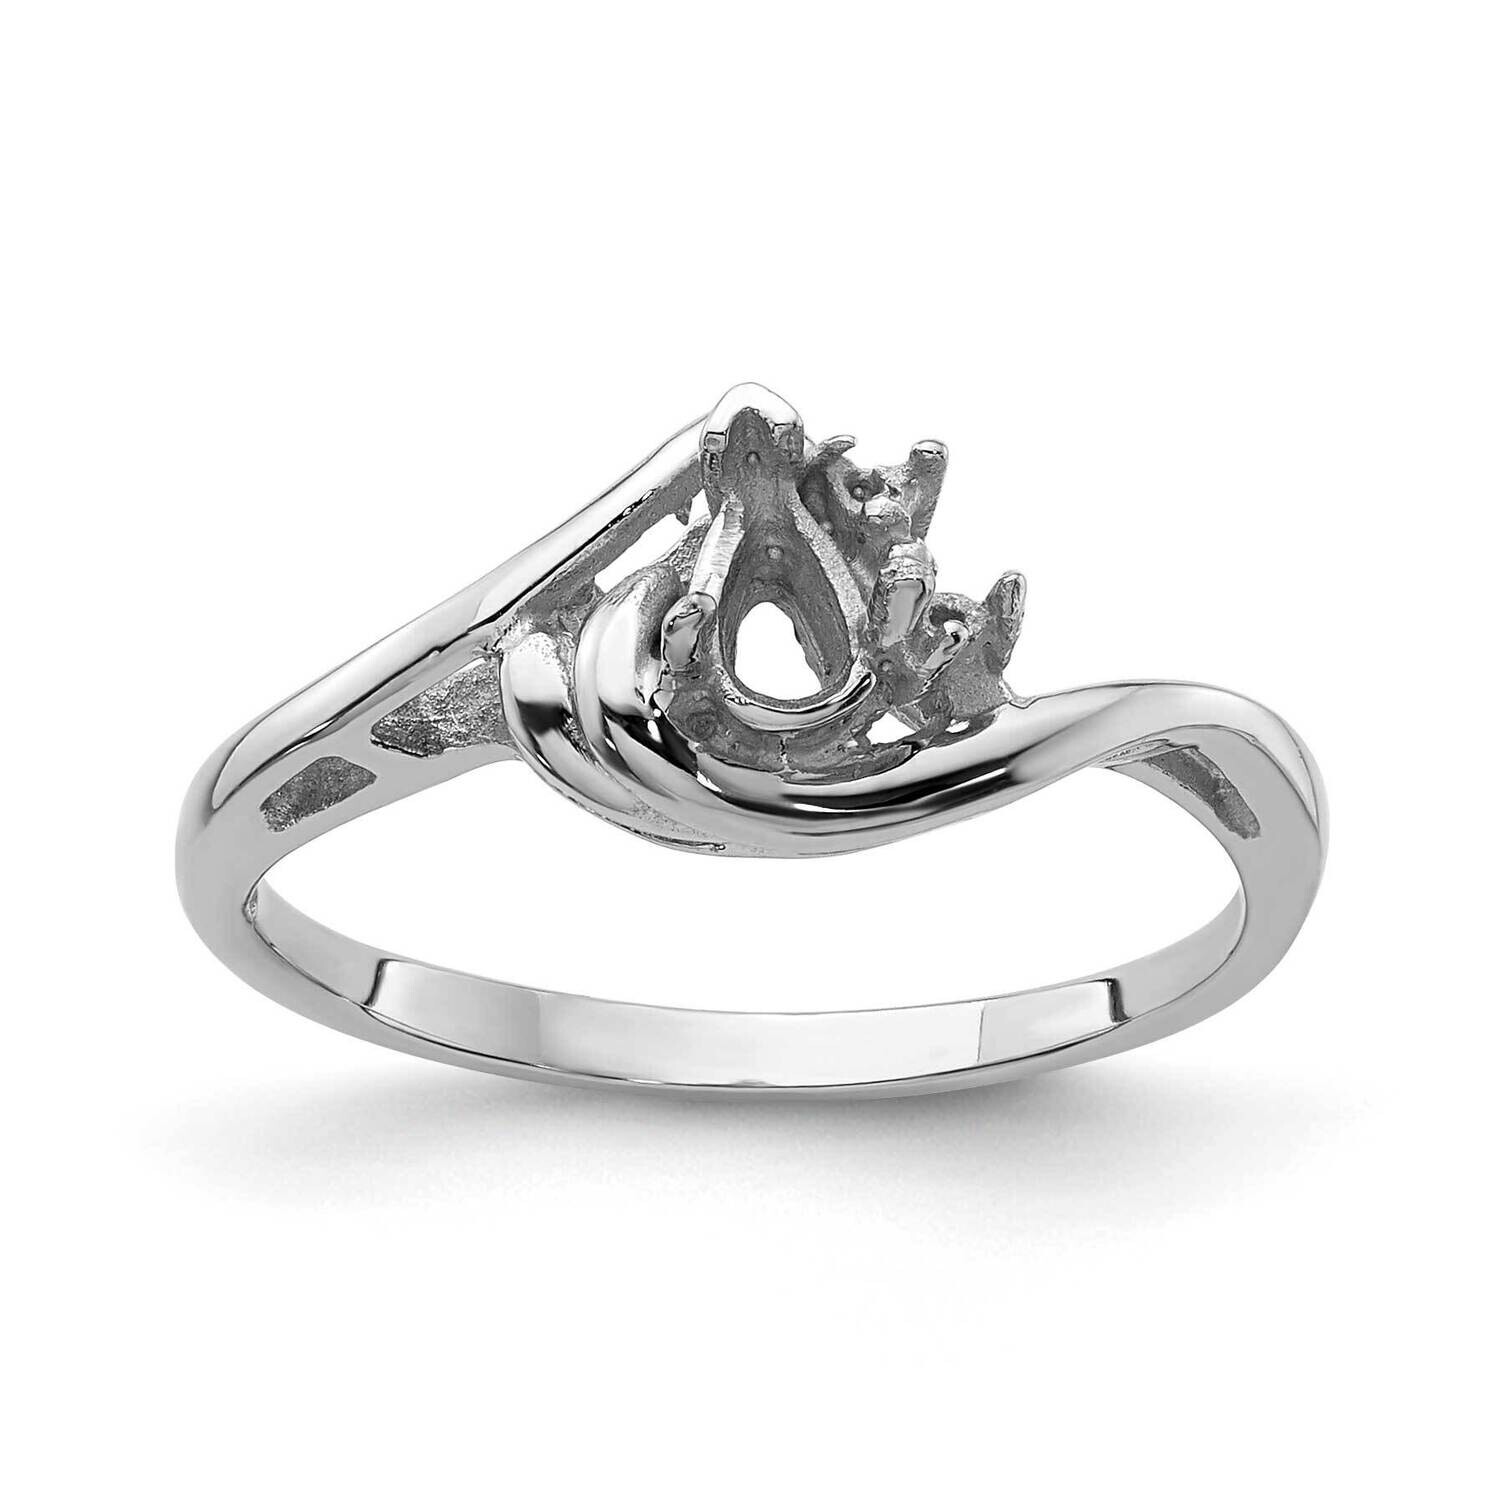 Diamond & Gemstone Ring Mounting 14k White Gold Y4628